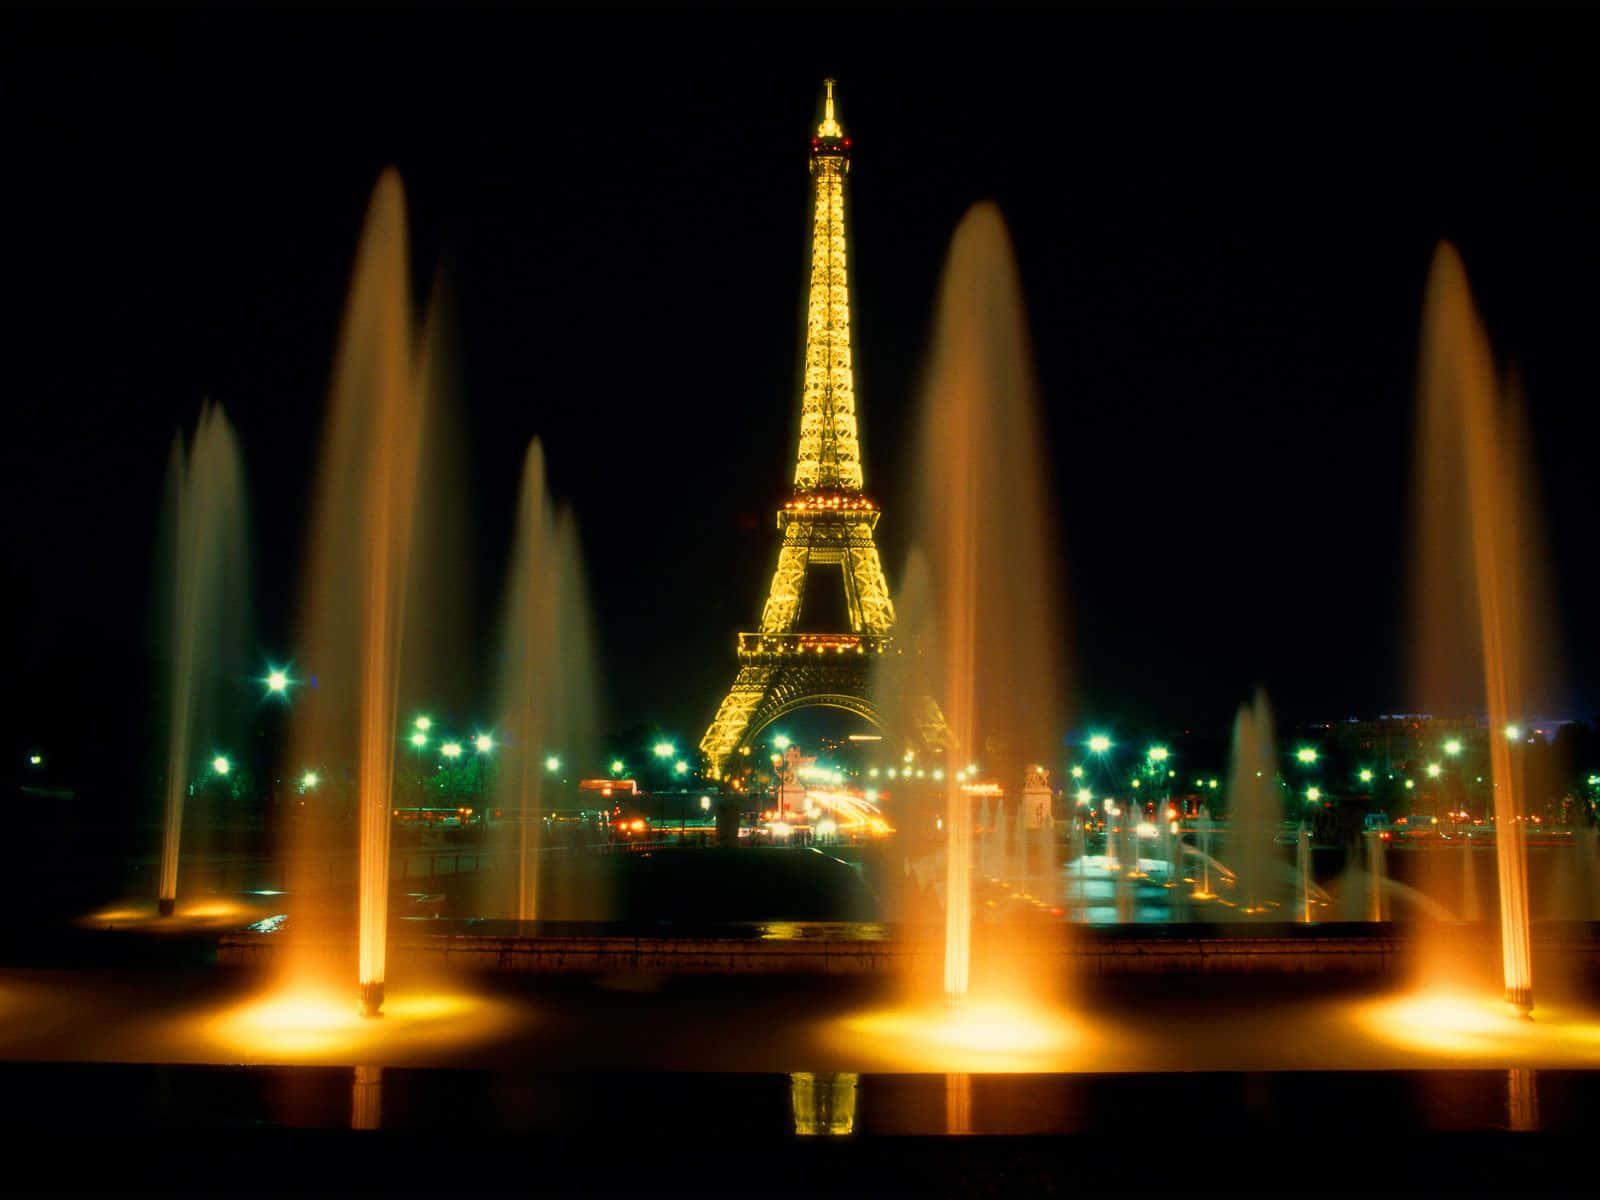 Imagenincreíble De La Torre Eiffel De Noche Con Fuentes